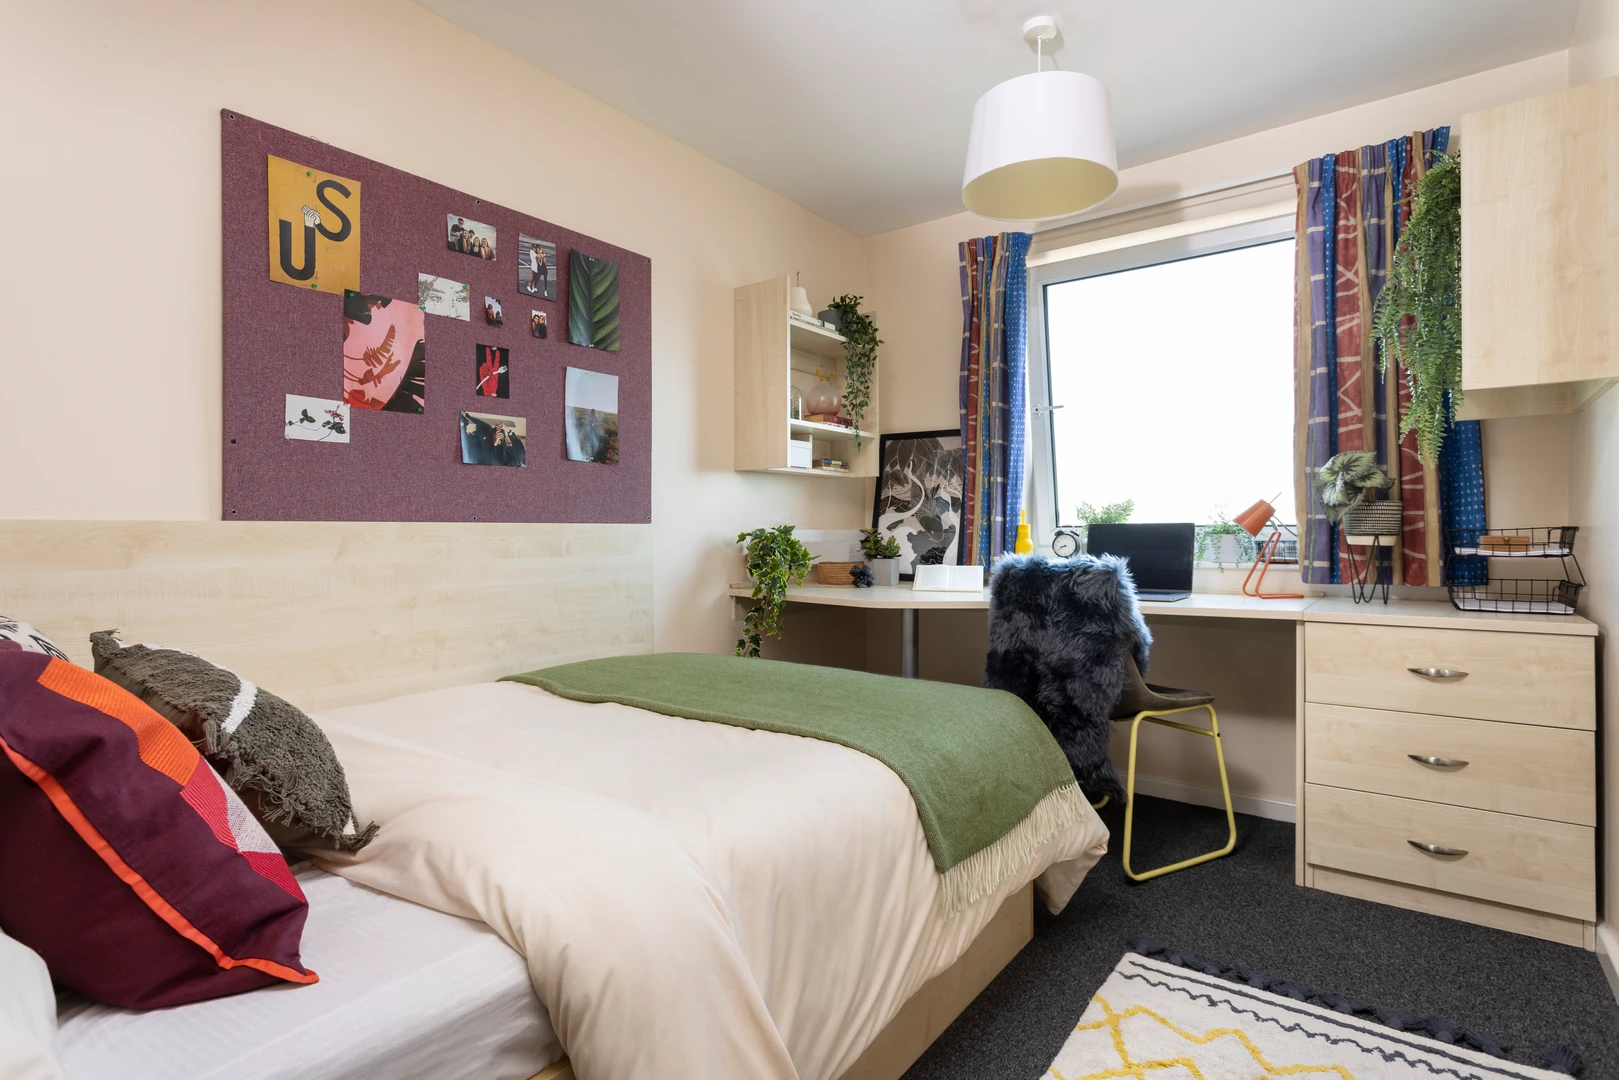 Zimmer mit Doppelbett zu vermieten Leeds